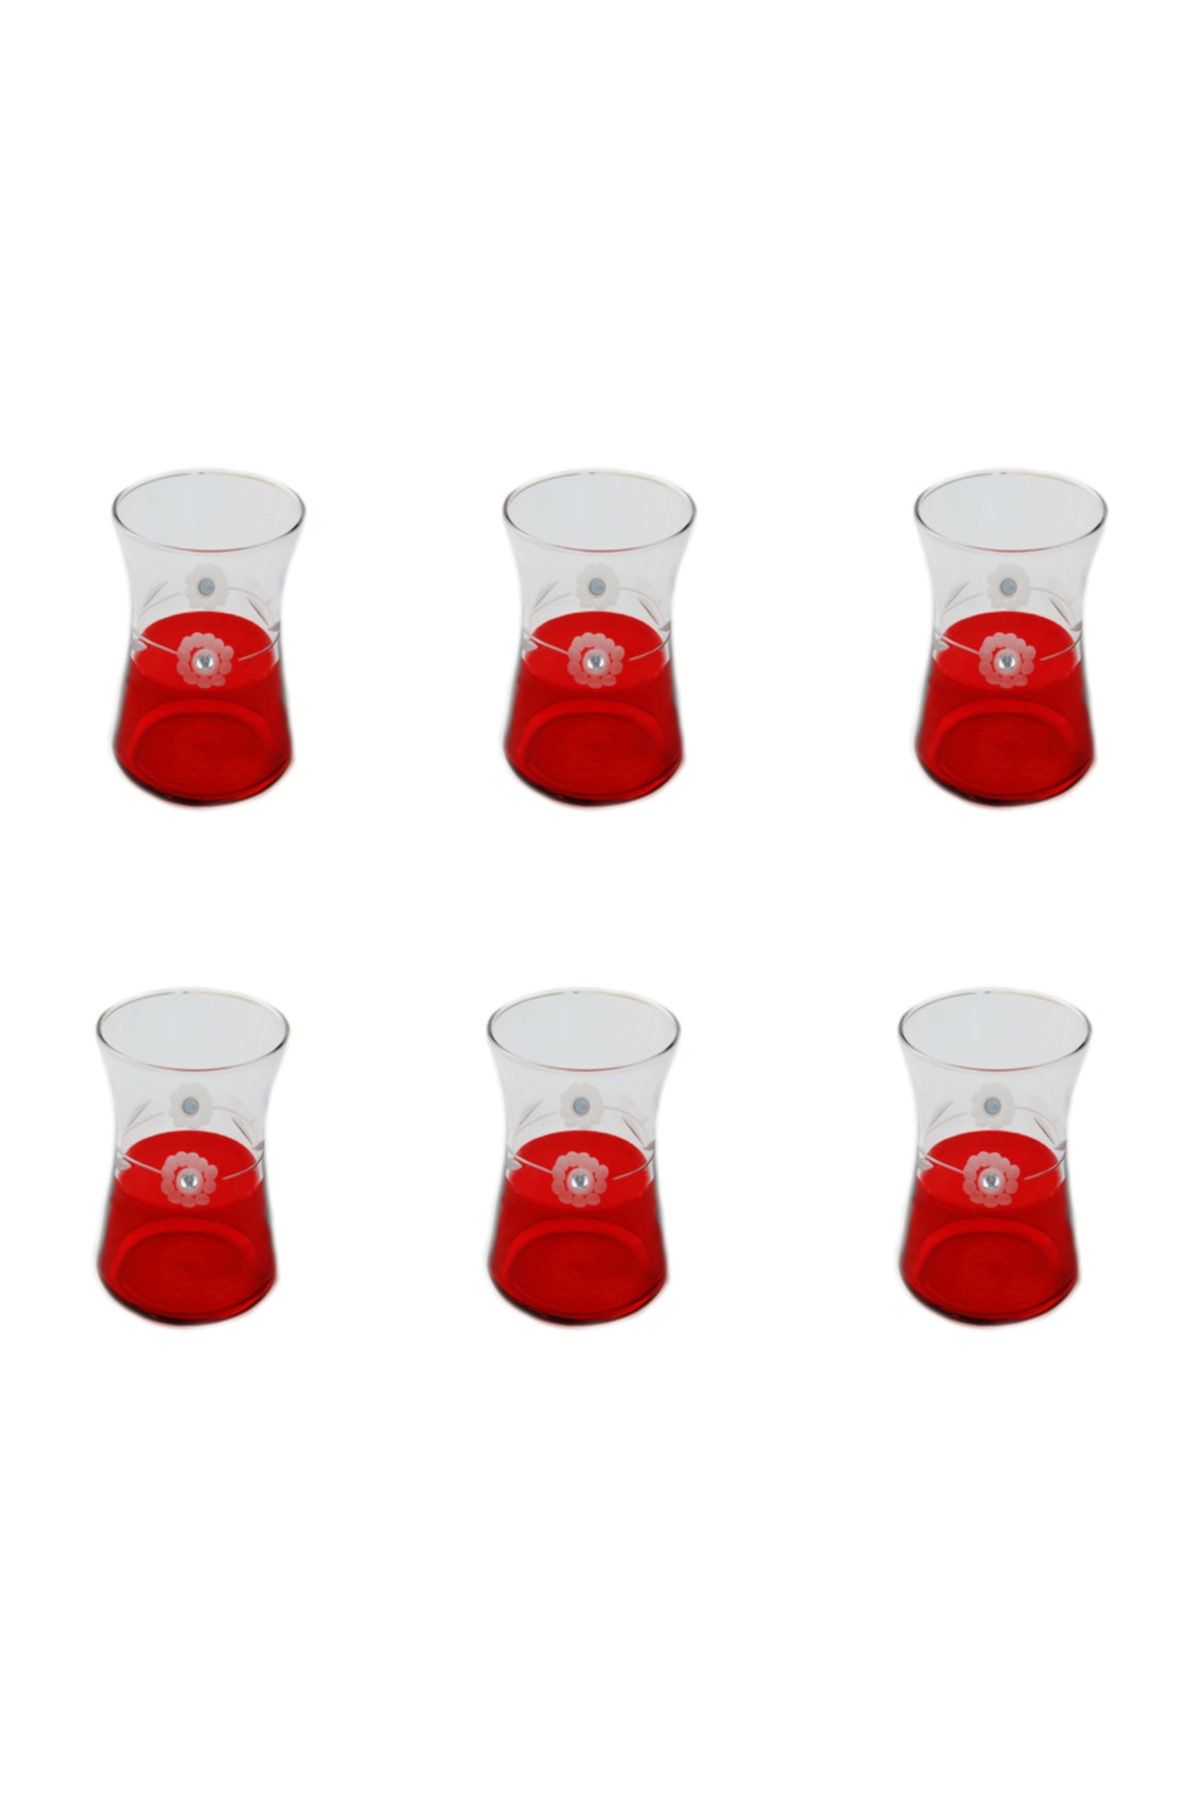 BAŞAK Heybeli Kırmızı(taşlı) Papatya Dekor 6 Adet Çay Bardağı